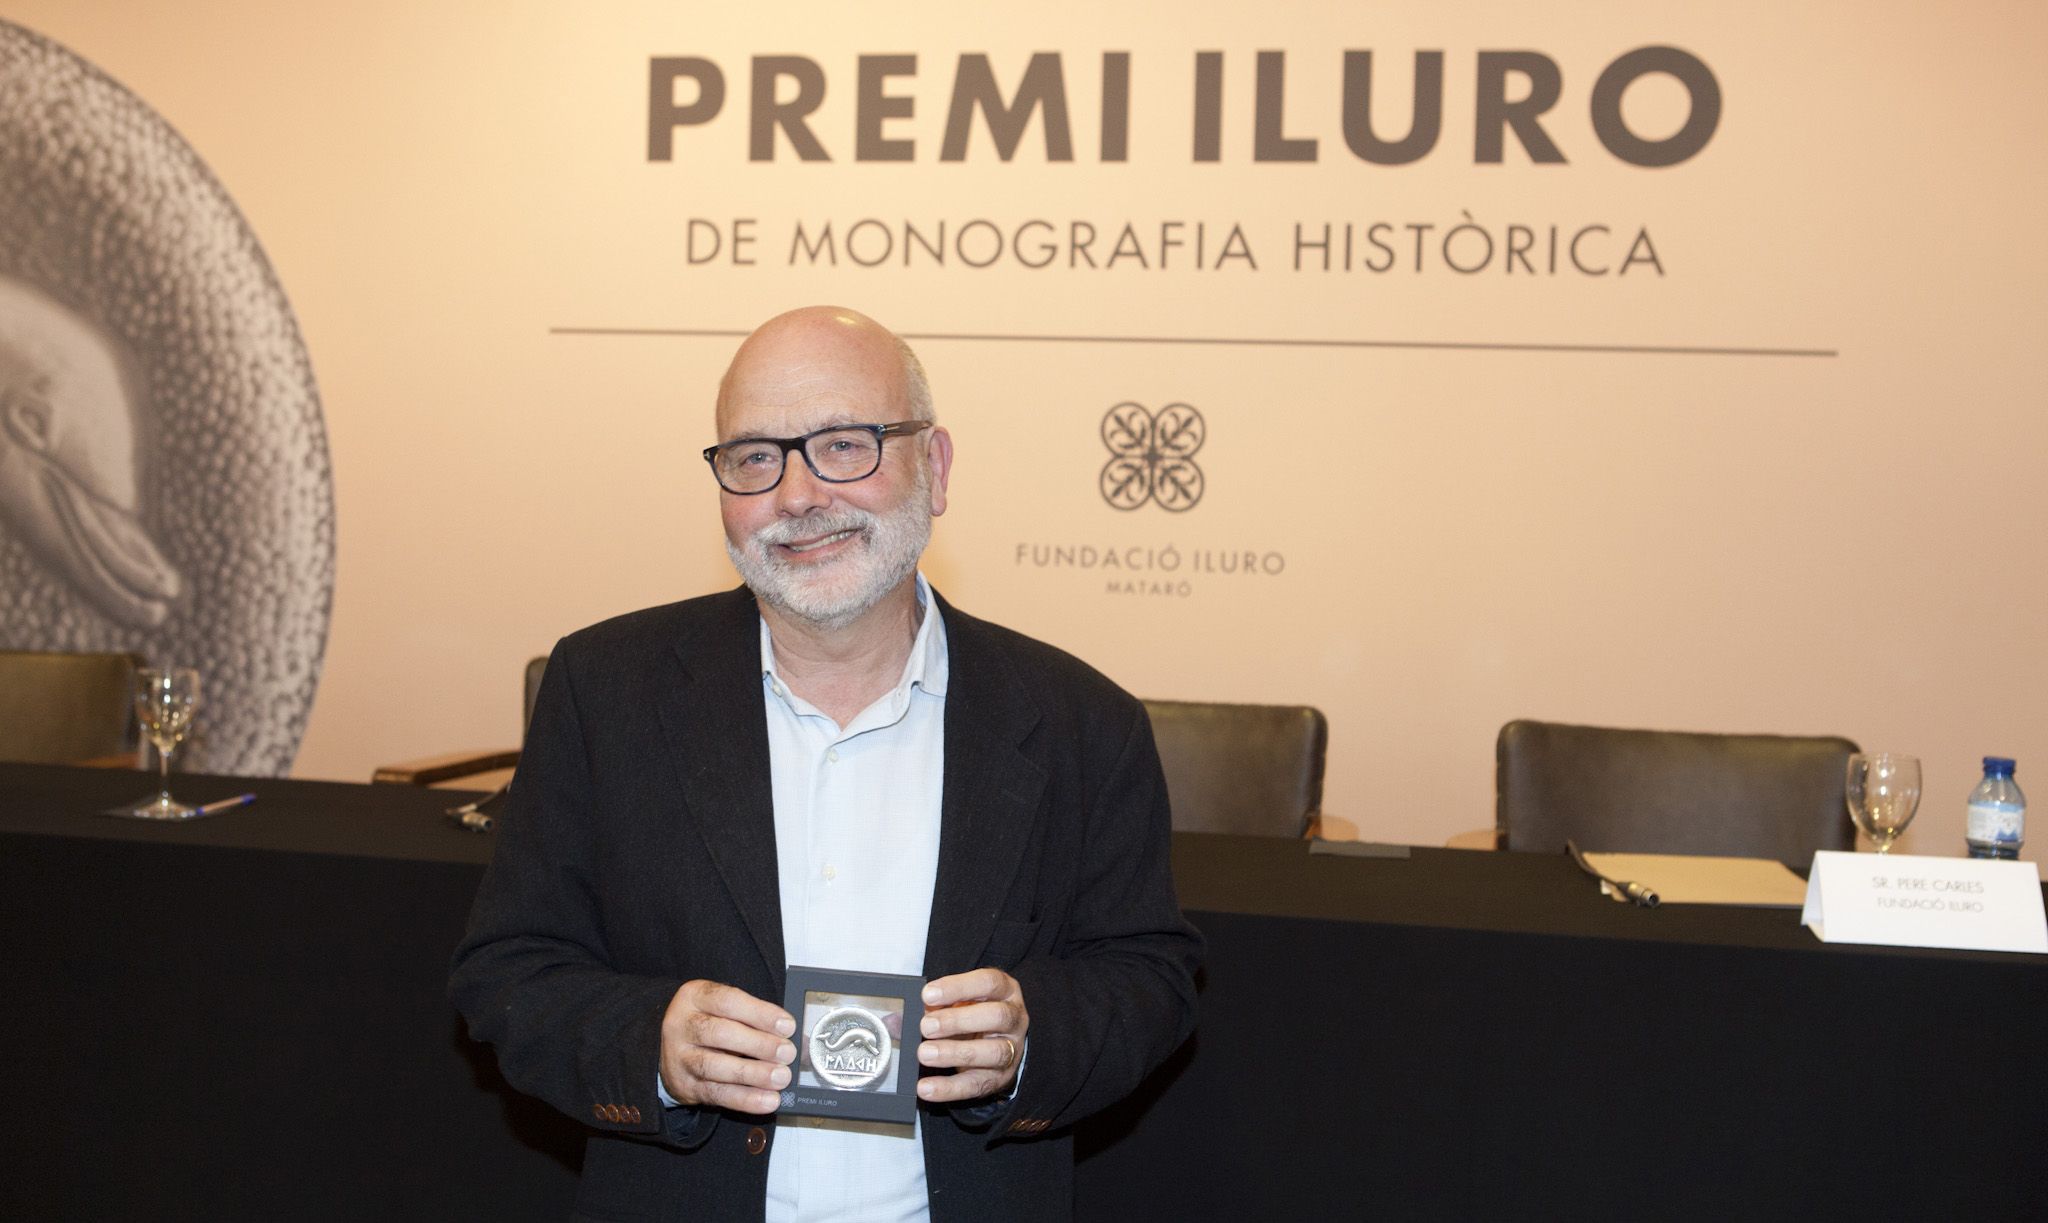 Una monografia sobre la repressió franquista a Mataró guanya la 60a convocatòria del Premi Iluro